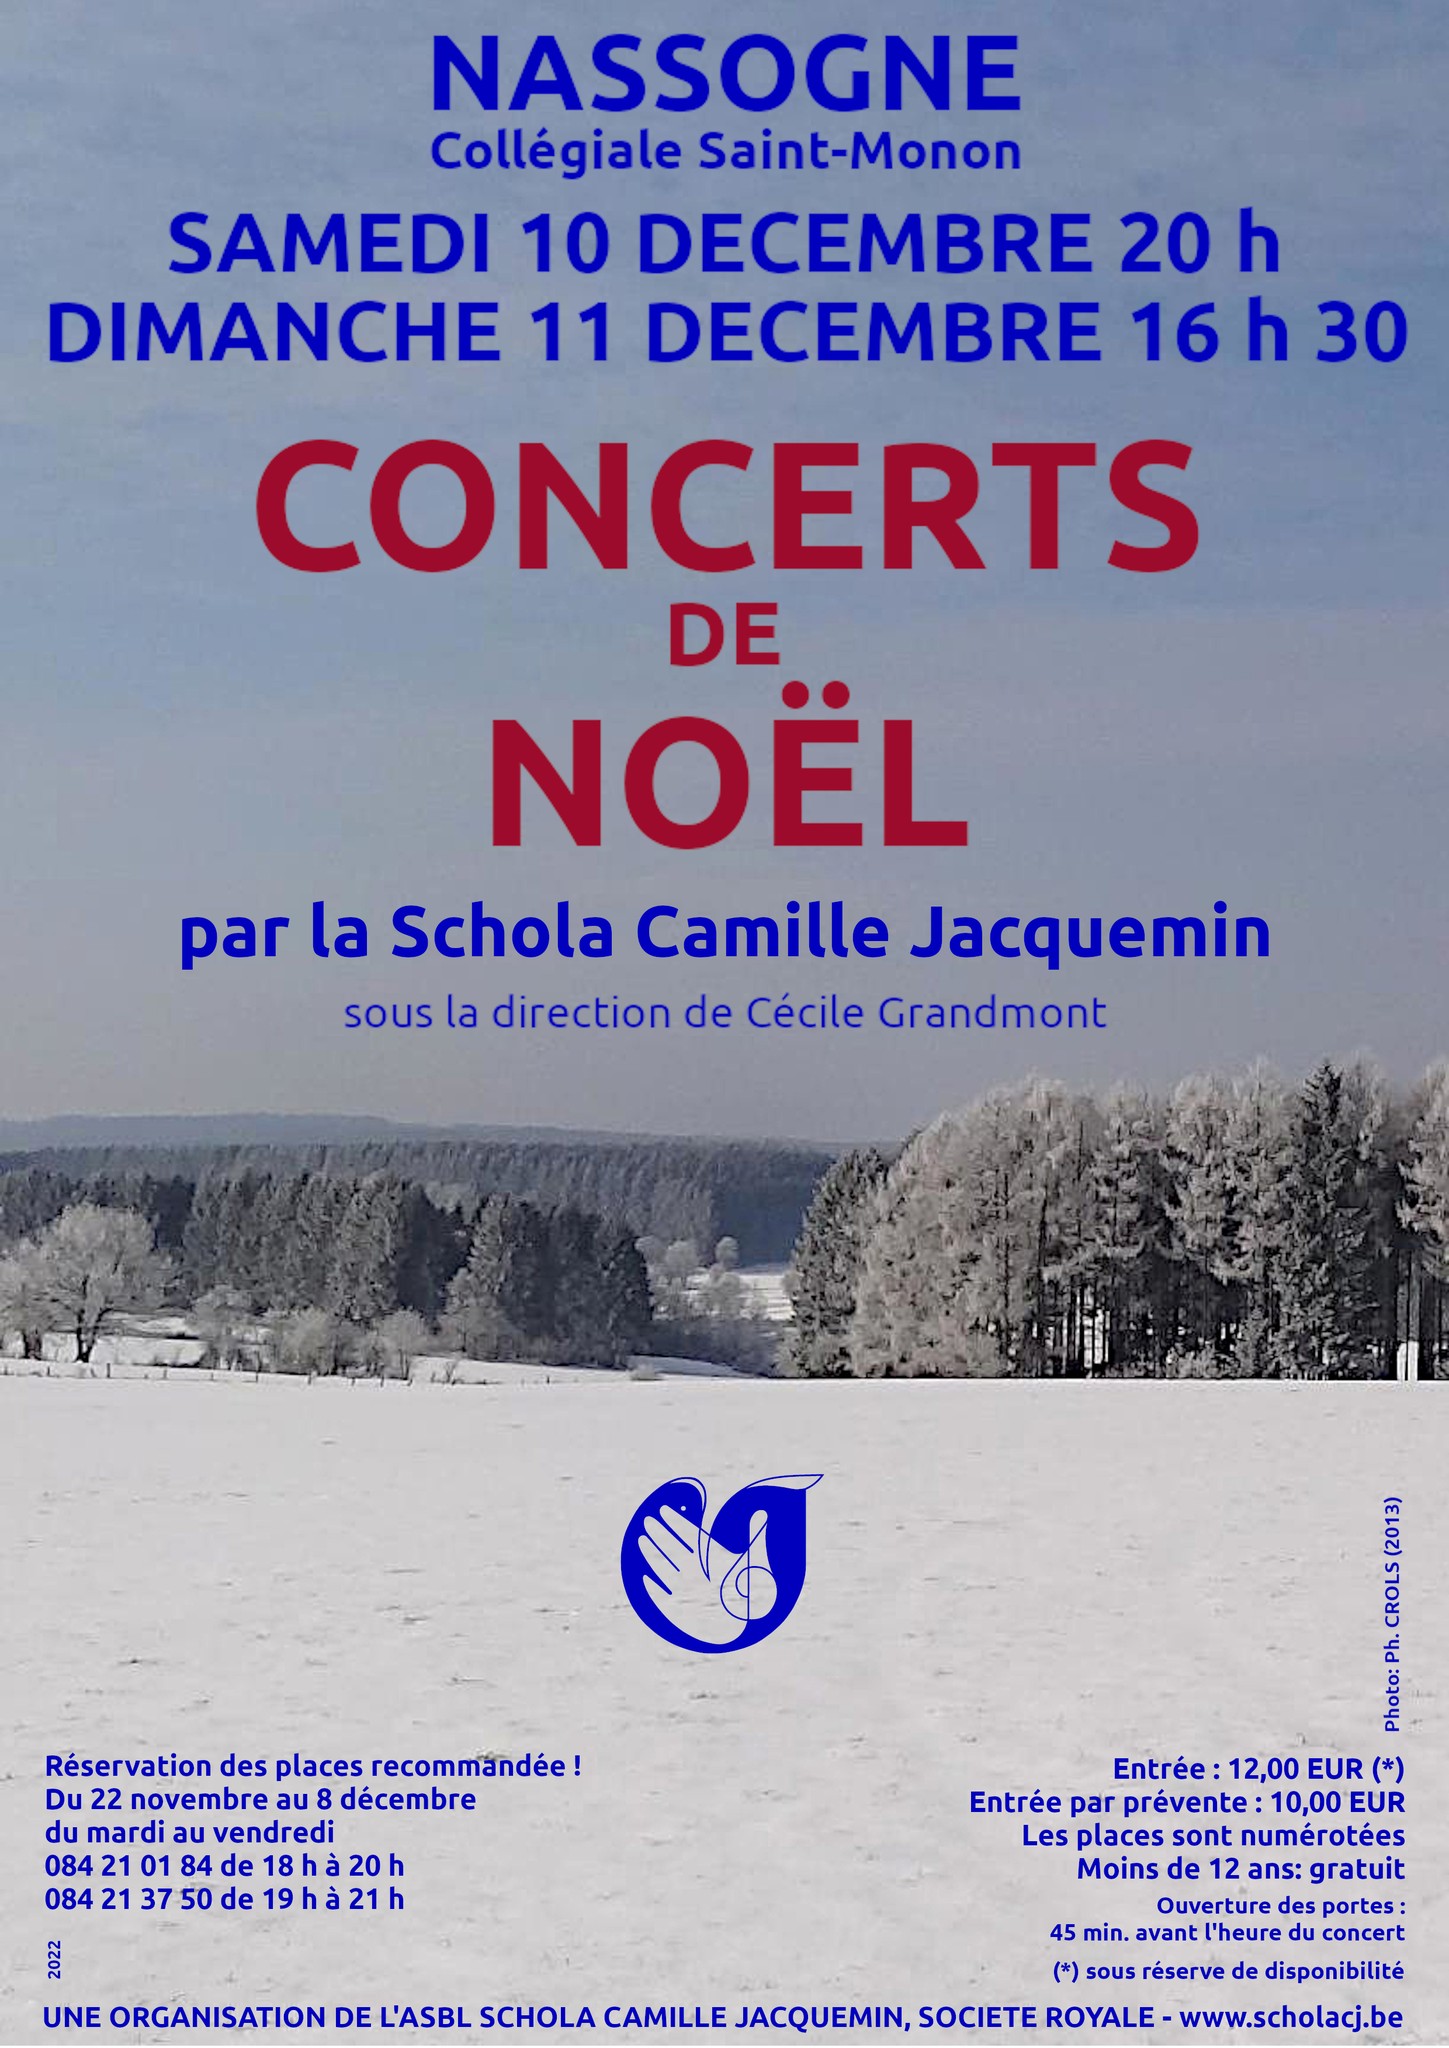 10 décembre 2022 20h et 1 décembre 2022 16h30, grands concerts de Noël
						 avec la Schola Camille Jacquemin en la collégiale St-Monon à Nassogne